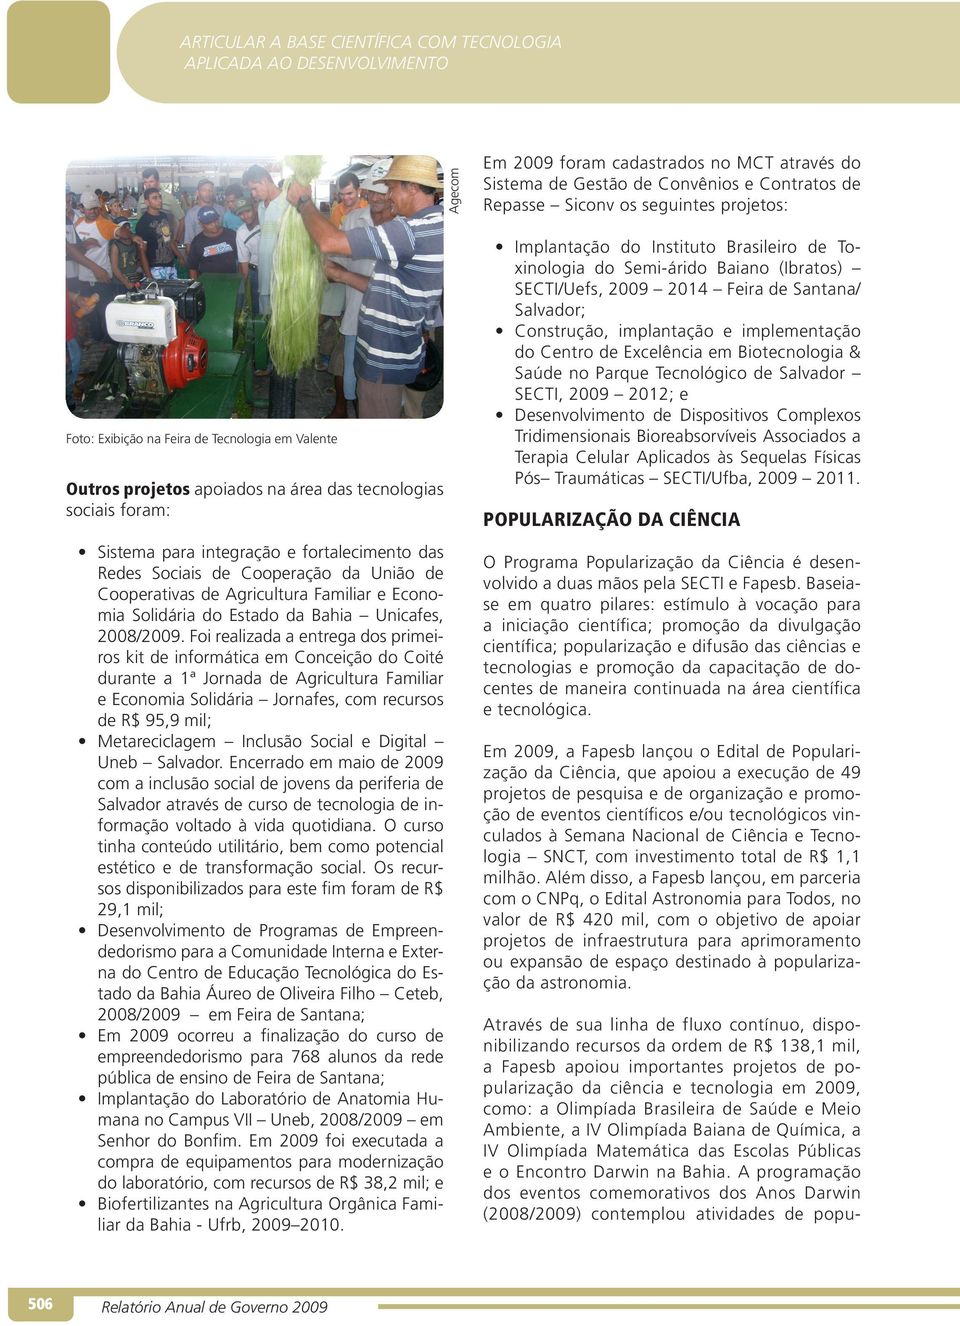 Foi realizada a entrega dos primeiros kit de informática em Conceição do Coité durante a 1ª Jornada de Agricultura Familiar e Economia Solidária Jornafes, com recursos de R$ 95,9 mil; Metareciclagem